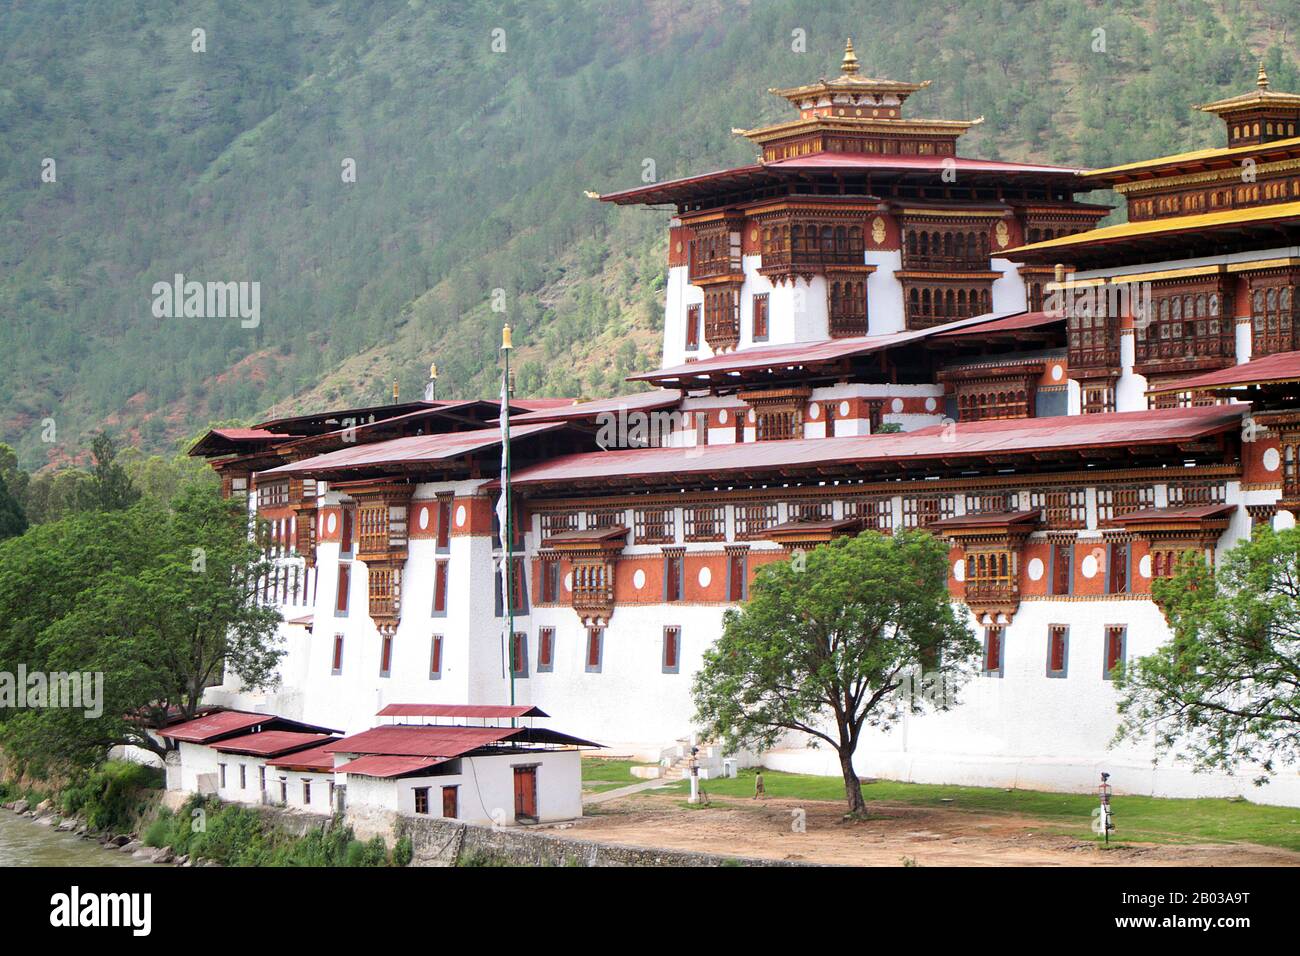 Le Punakha Dzong, également connu sous le nom de Pungtang Dewa chhenbi Phodrang ('le palais du grand bonheur ou du bonheur') a été construit en 1637 - 1638 par le premier Zhabdrung Rinpoché et fondateur de l'État bhoutanais, Ngawang Namgyal (1594 - 1651). C'est le deuxième dzong le plus grand et le deuxième plus ancien (forteresse) au Bhoutan, situé au confluent des rivières Pho Chhu (père) et Mo Chhu (mère) dans la vallée de Punakha-Wangdue. Punakha Dzong est le centre administratif du district de Punakha, et a autrefois servi de centre administratif et de siège du gouvernement du Bhoutan jusqu'en 1855, lorsque la capitale a été transférée à Thi Banque D'Images